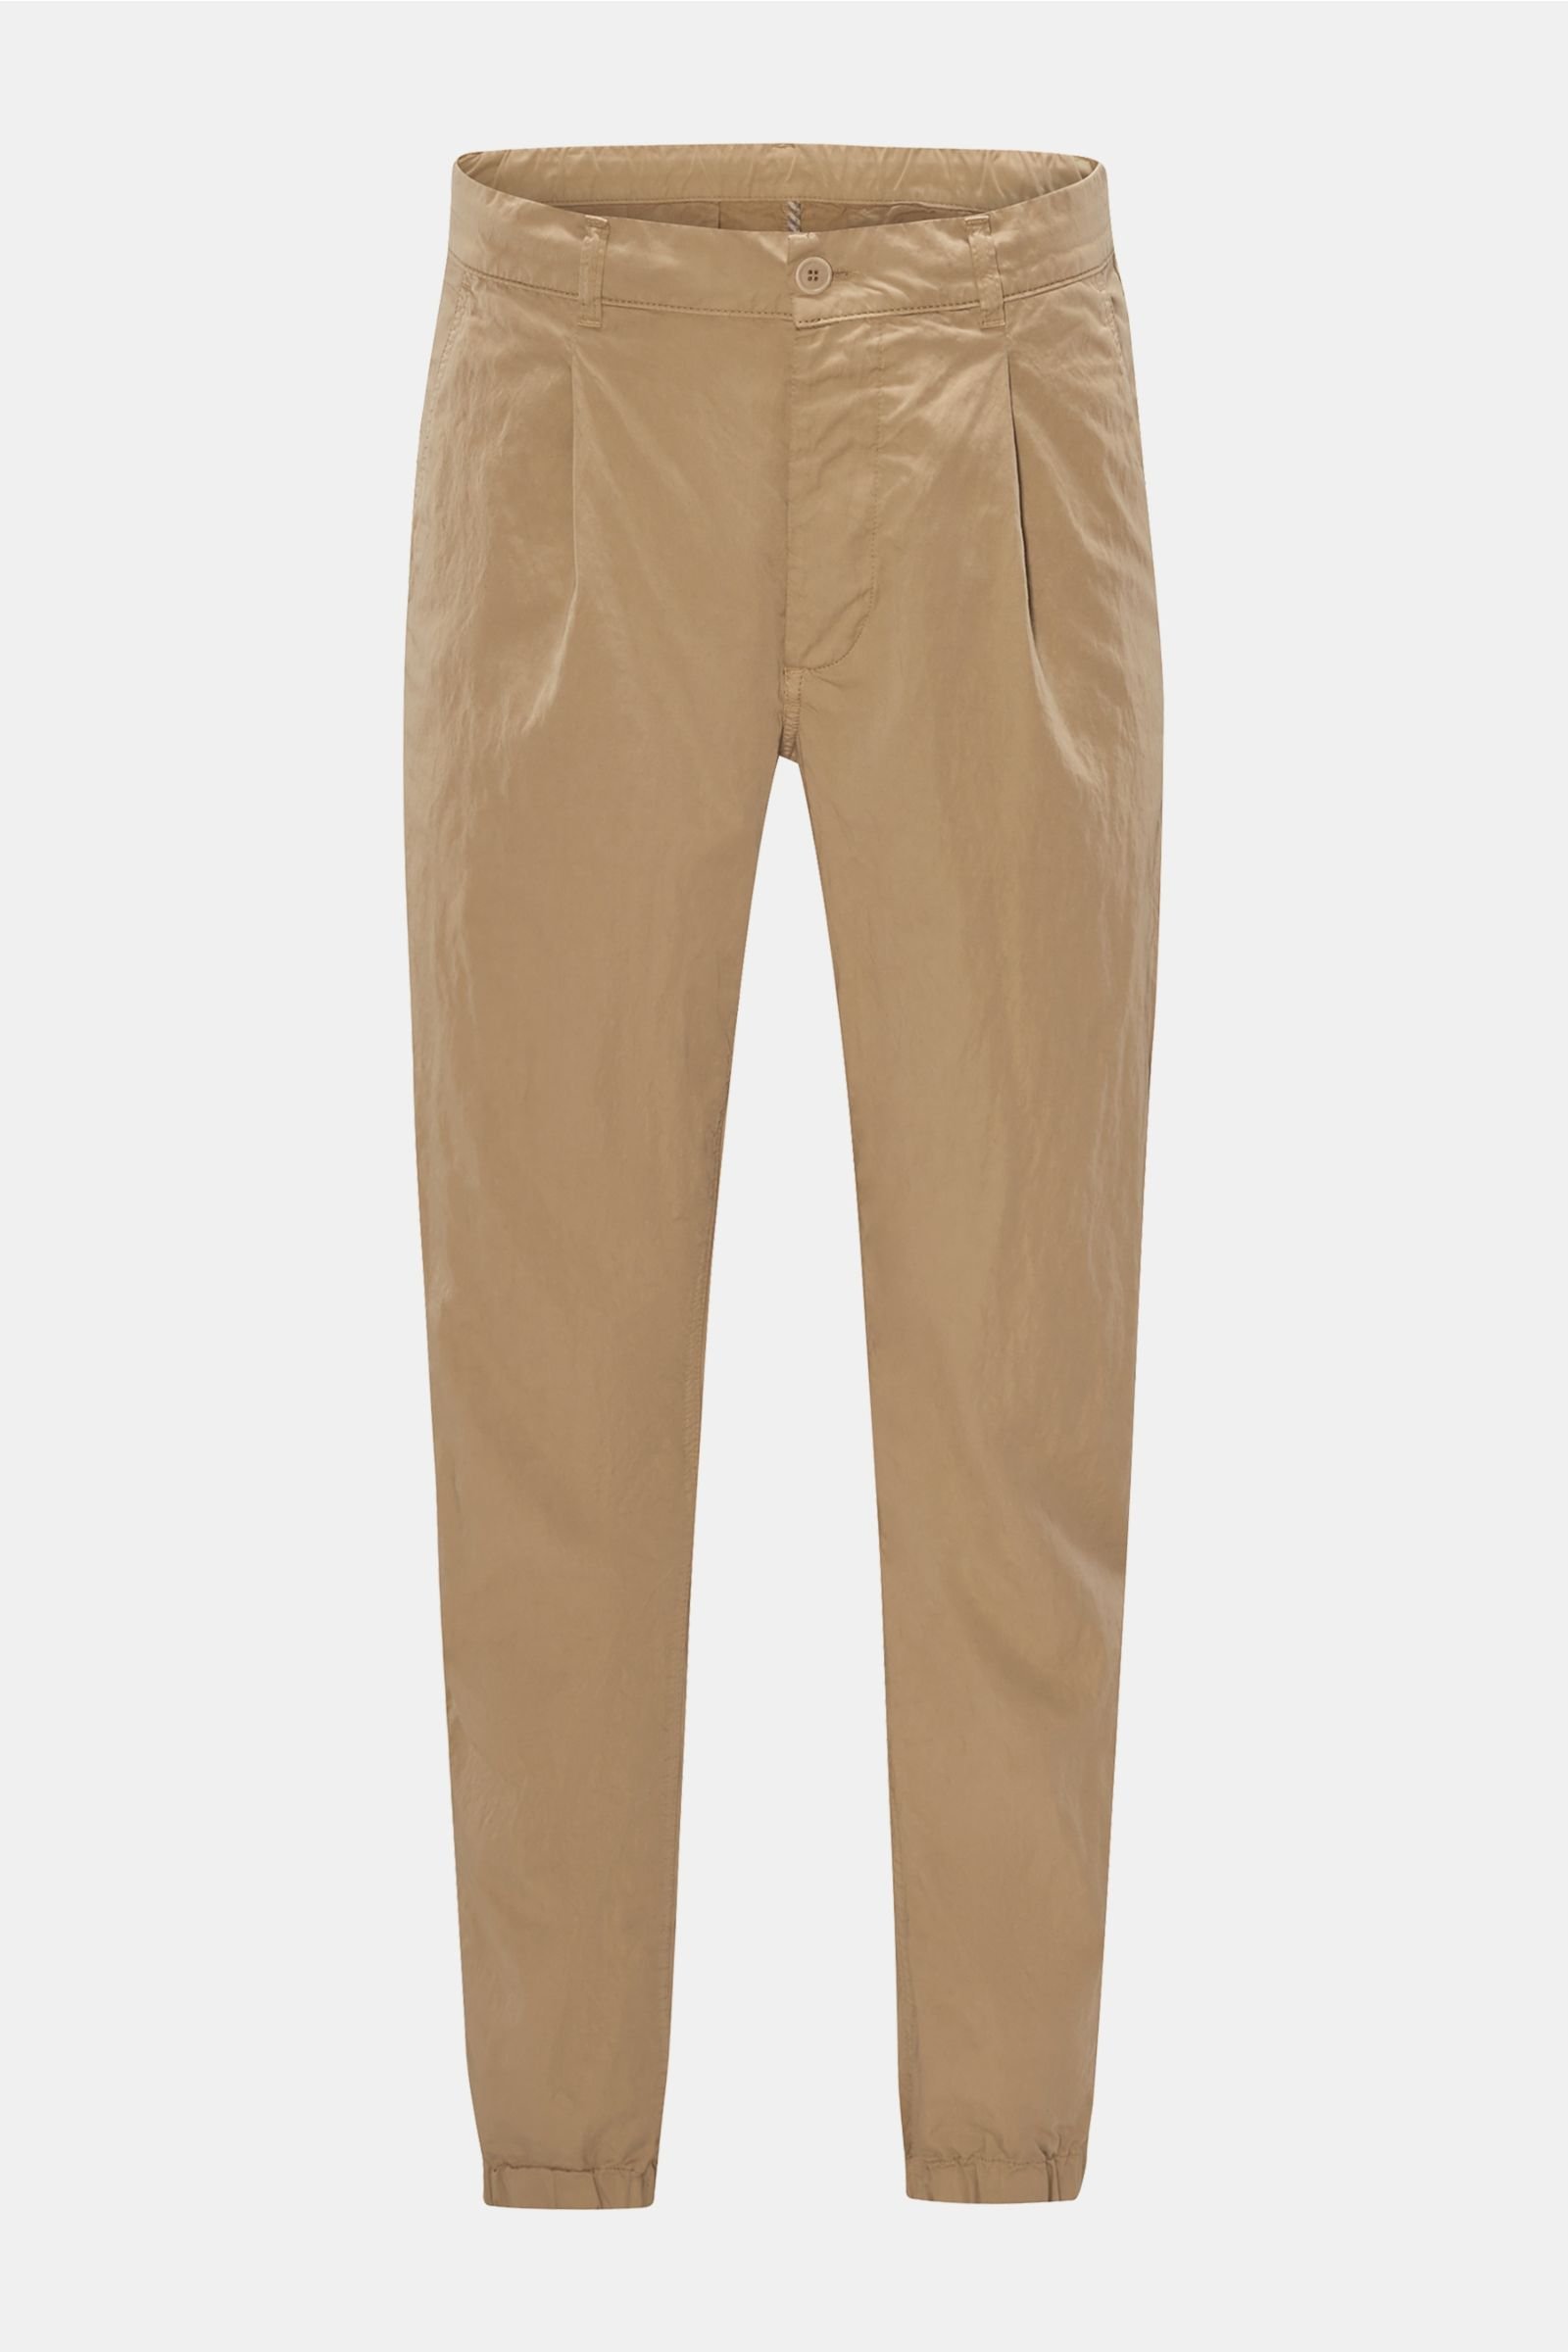 Jogger pants 'Zipp' light brown